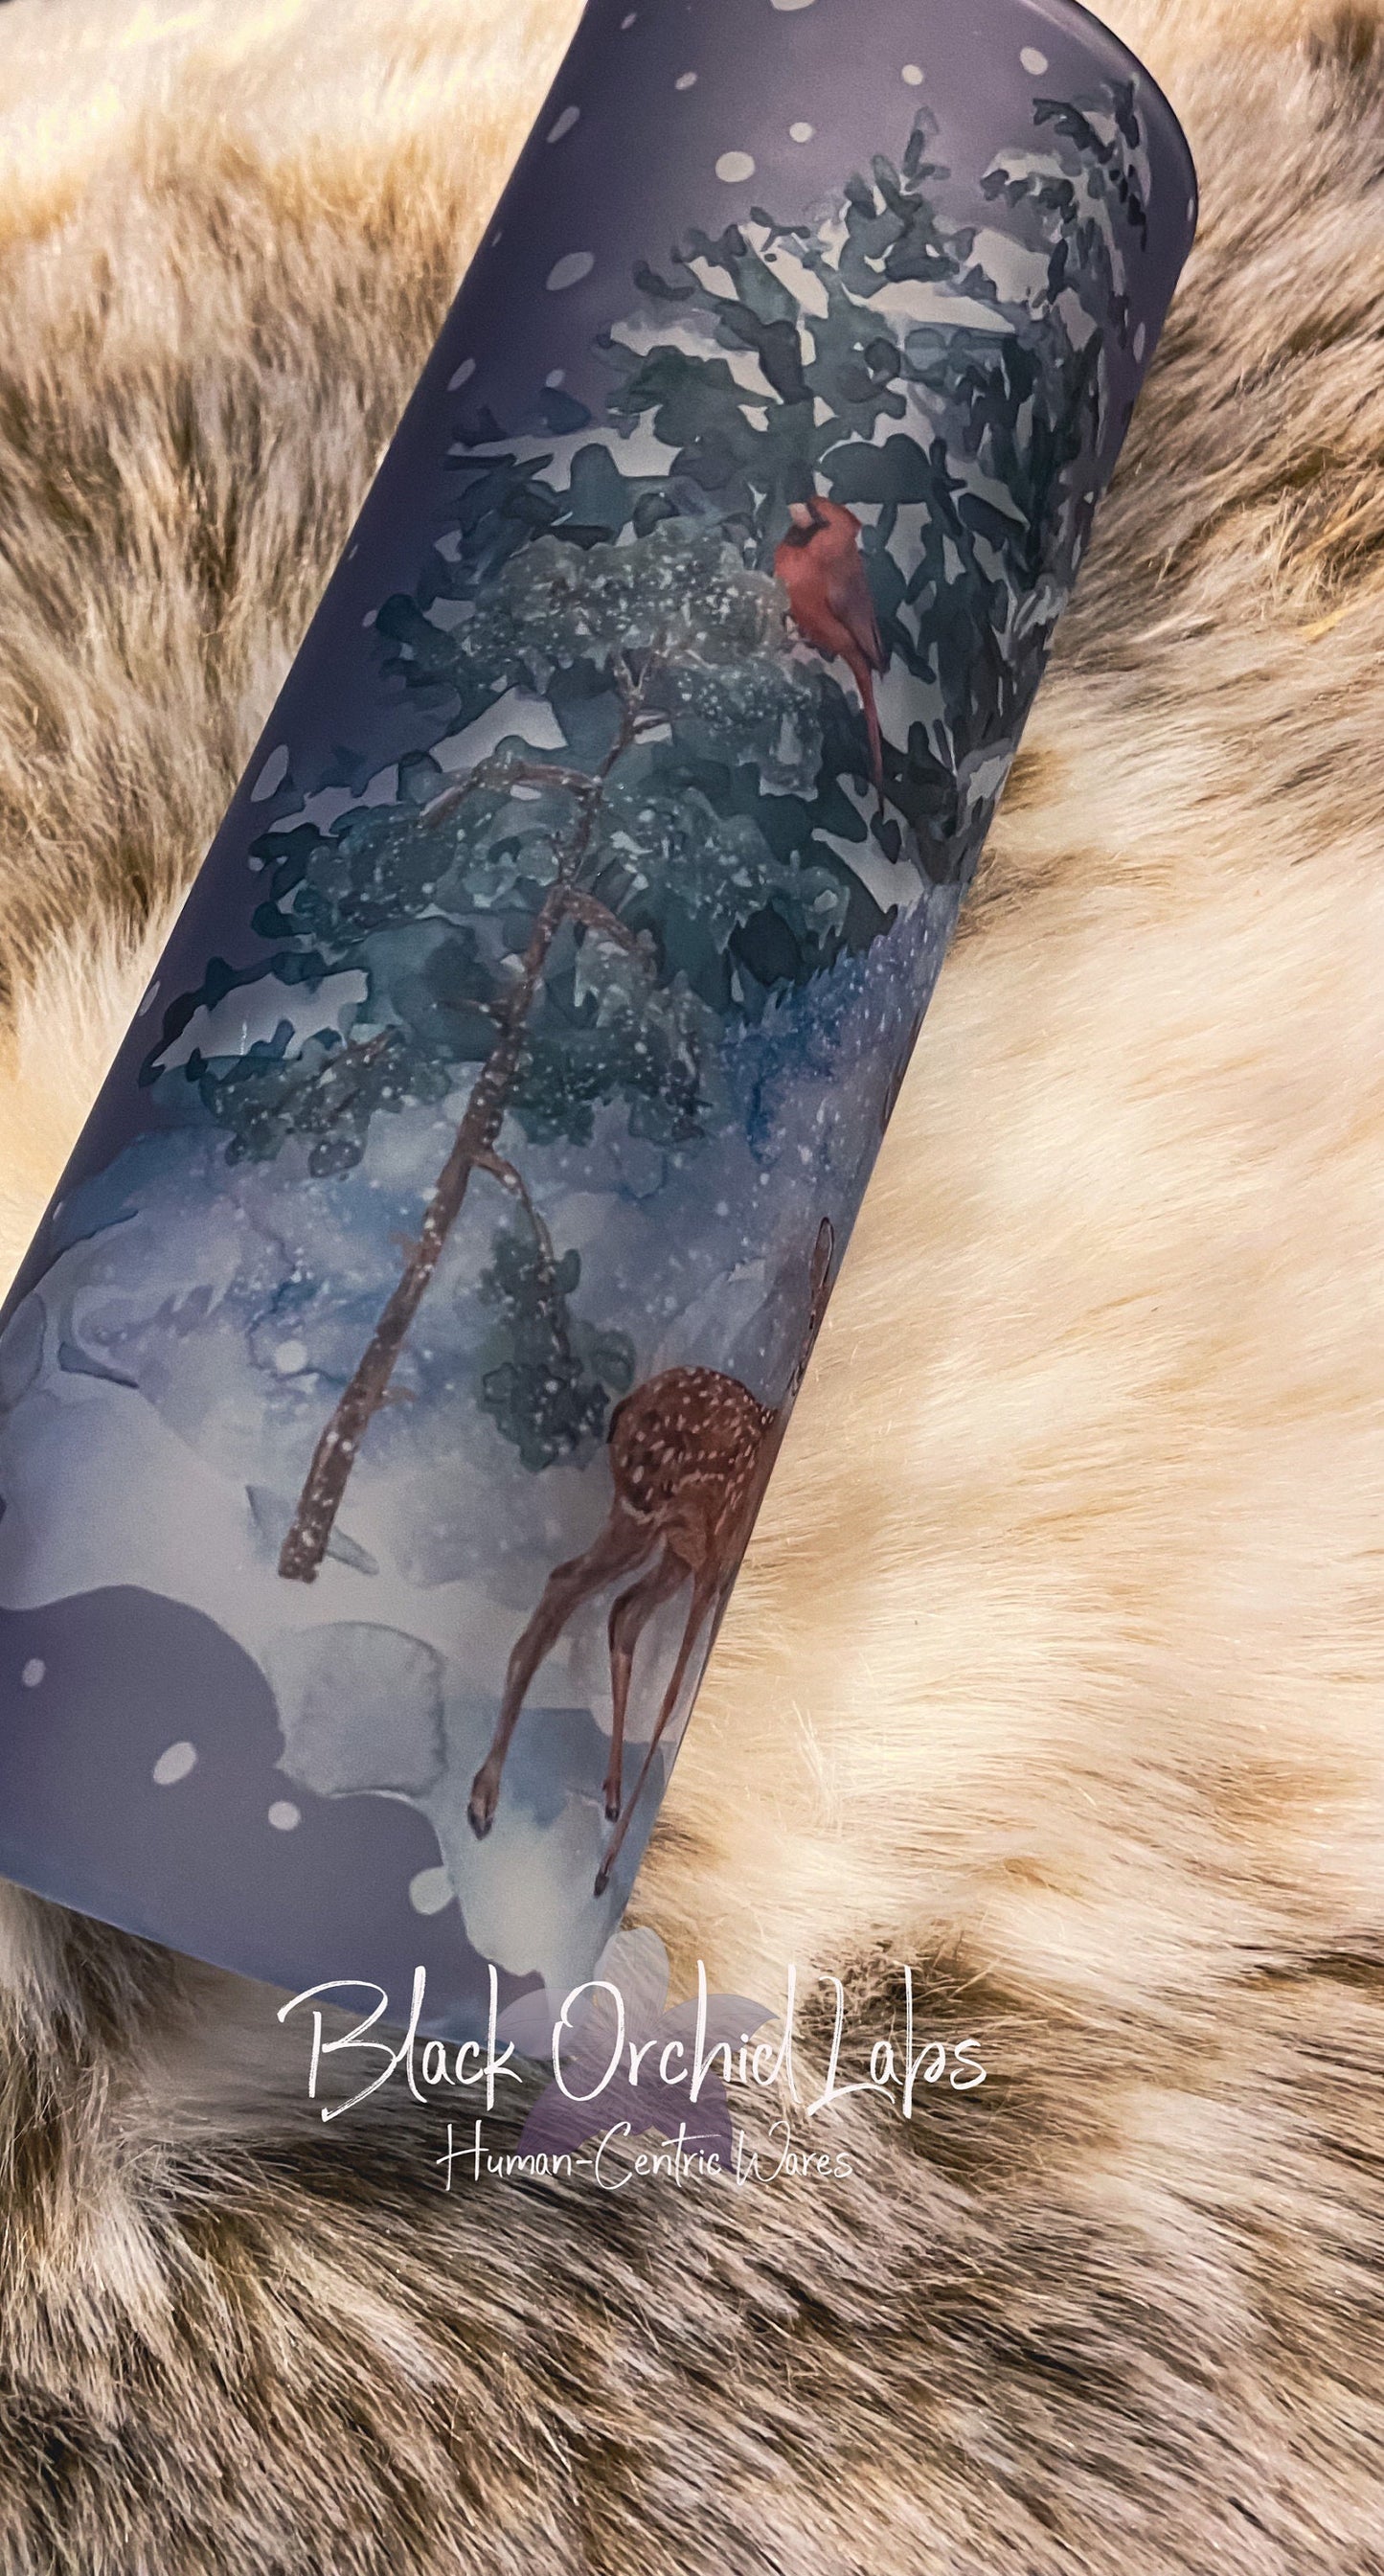 Winter forest scene glass Printed Tumbler, deer scene Travel Mug, Holiday festive Print Tumbler water bottle, gift exchange